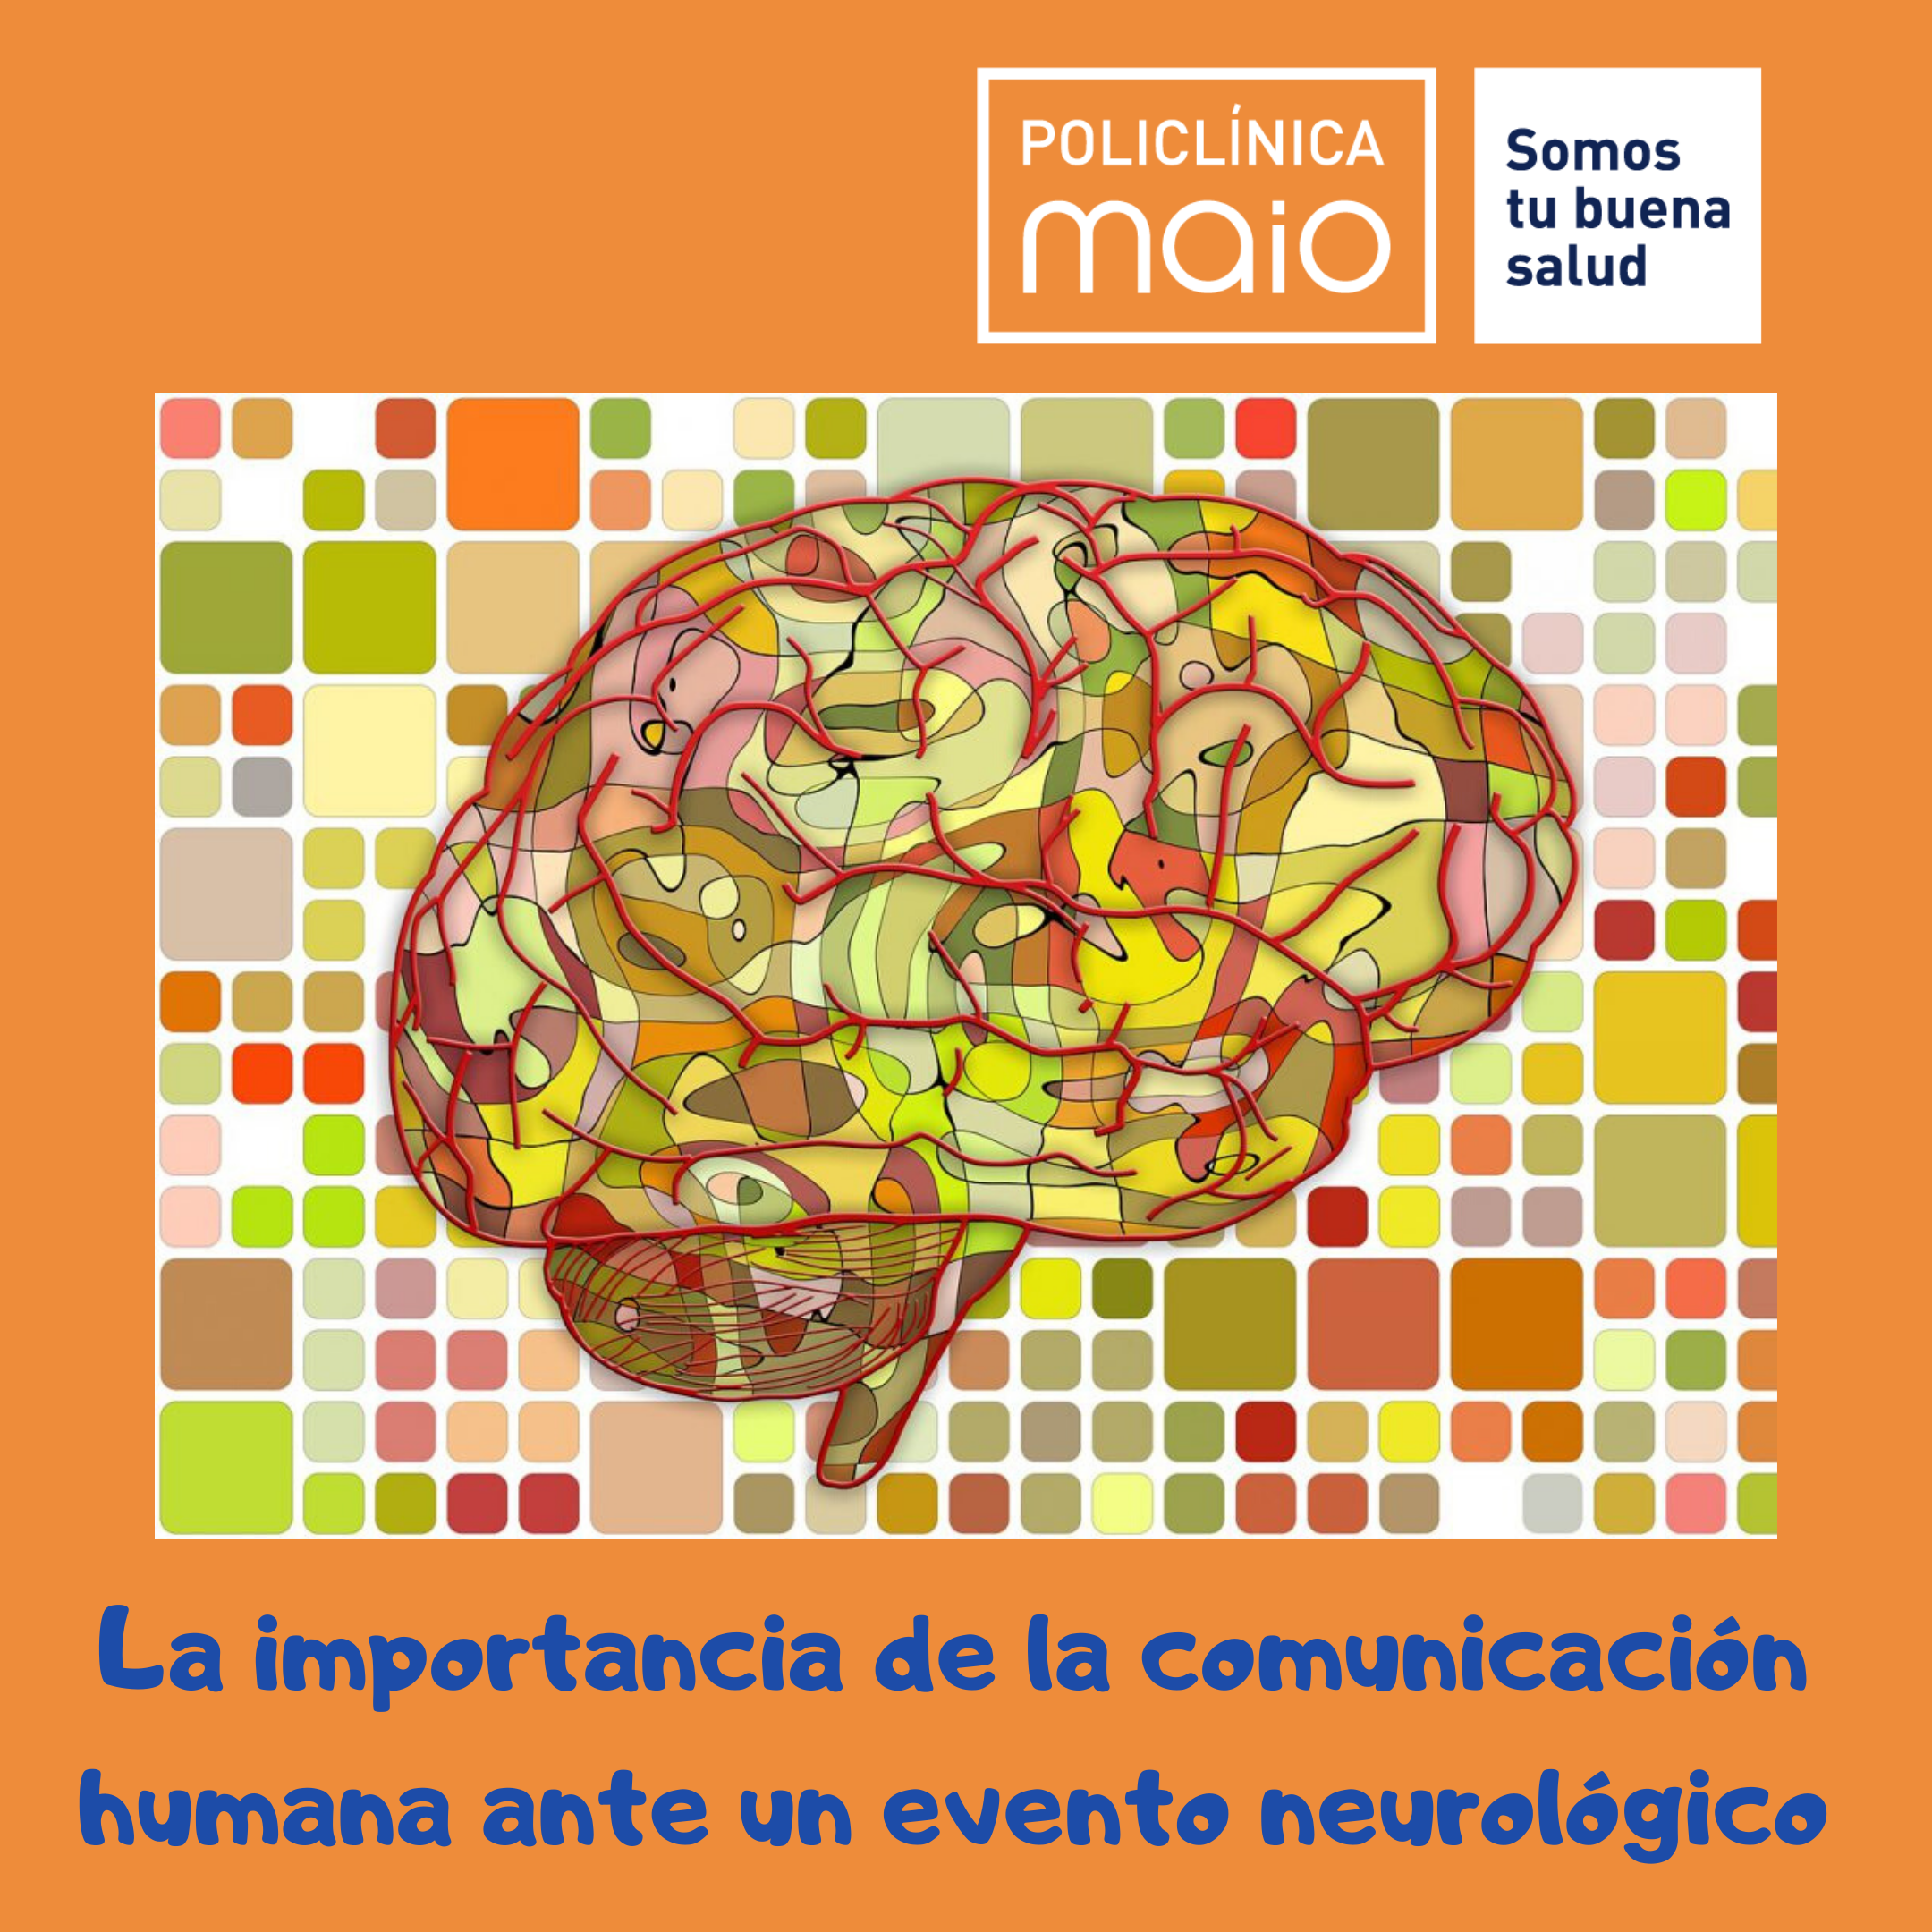 “La importancia de la comunicación humana ante un evento neurológico”